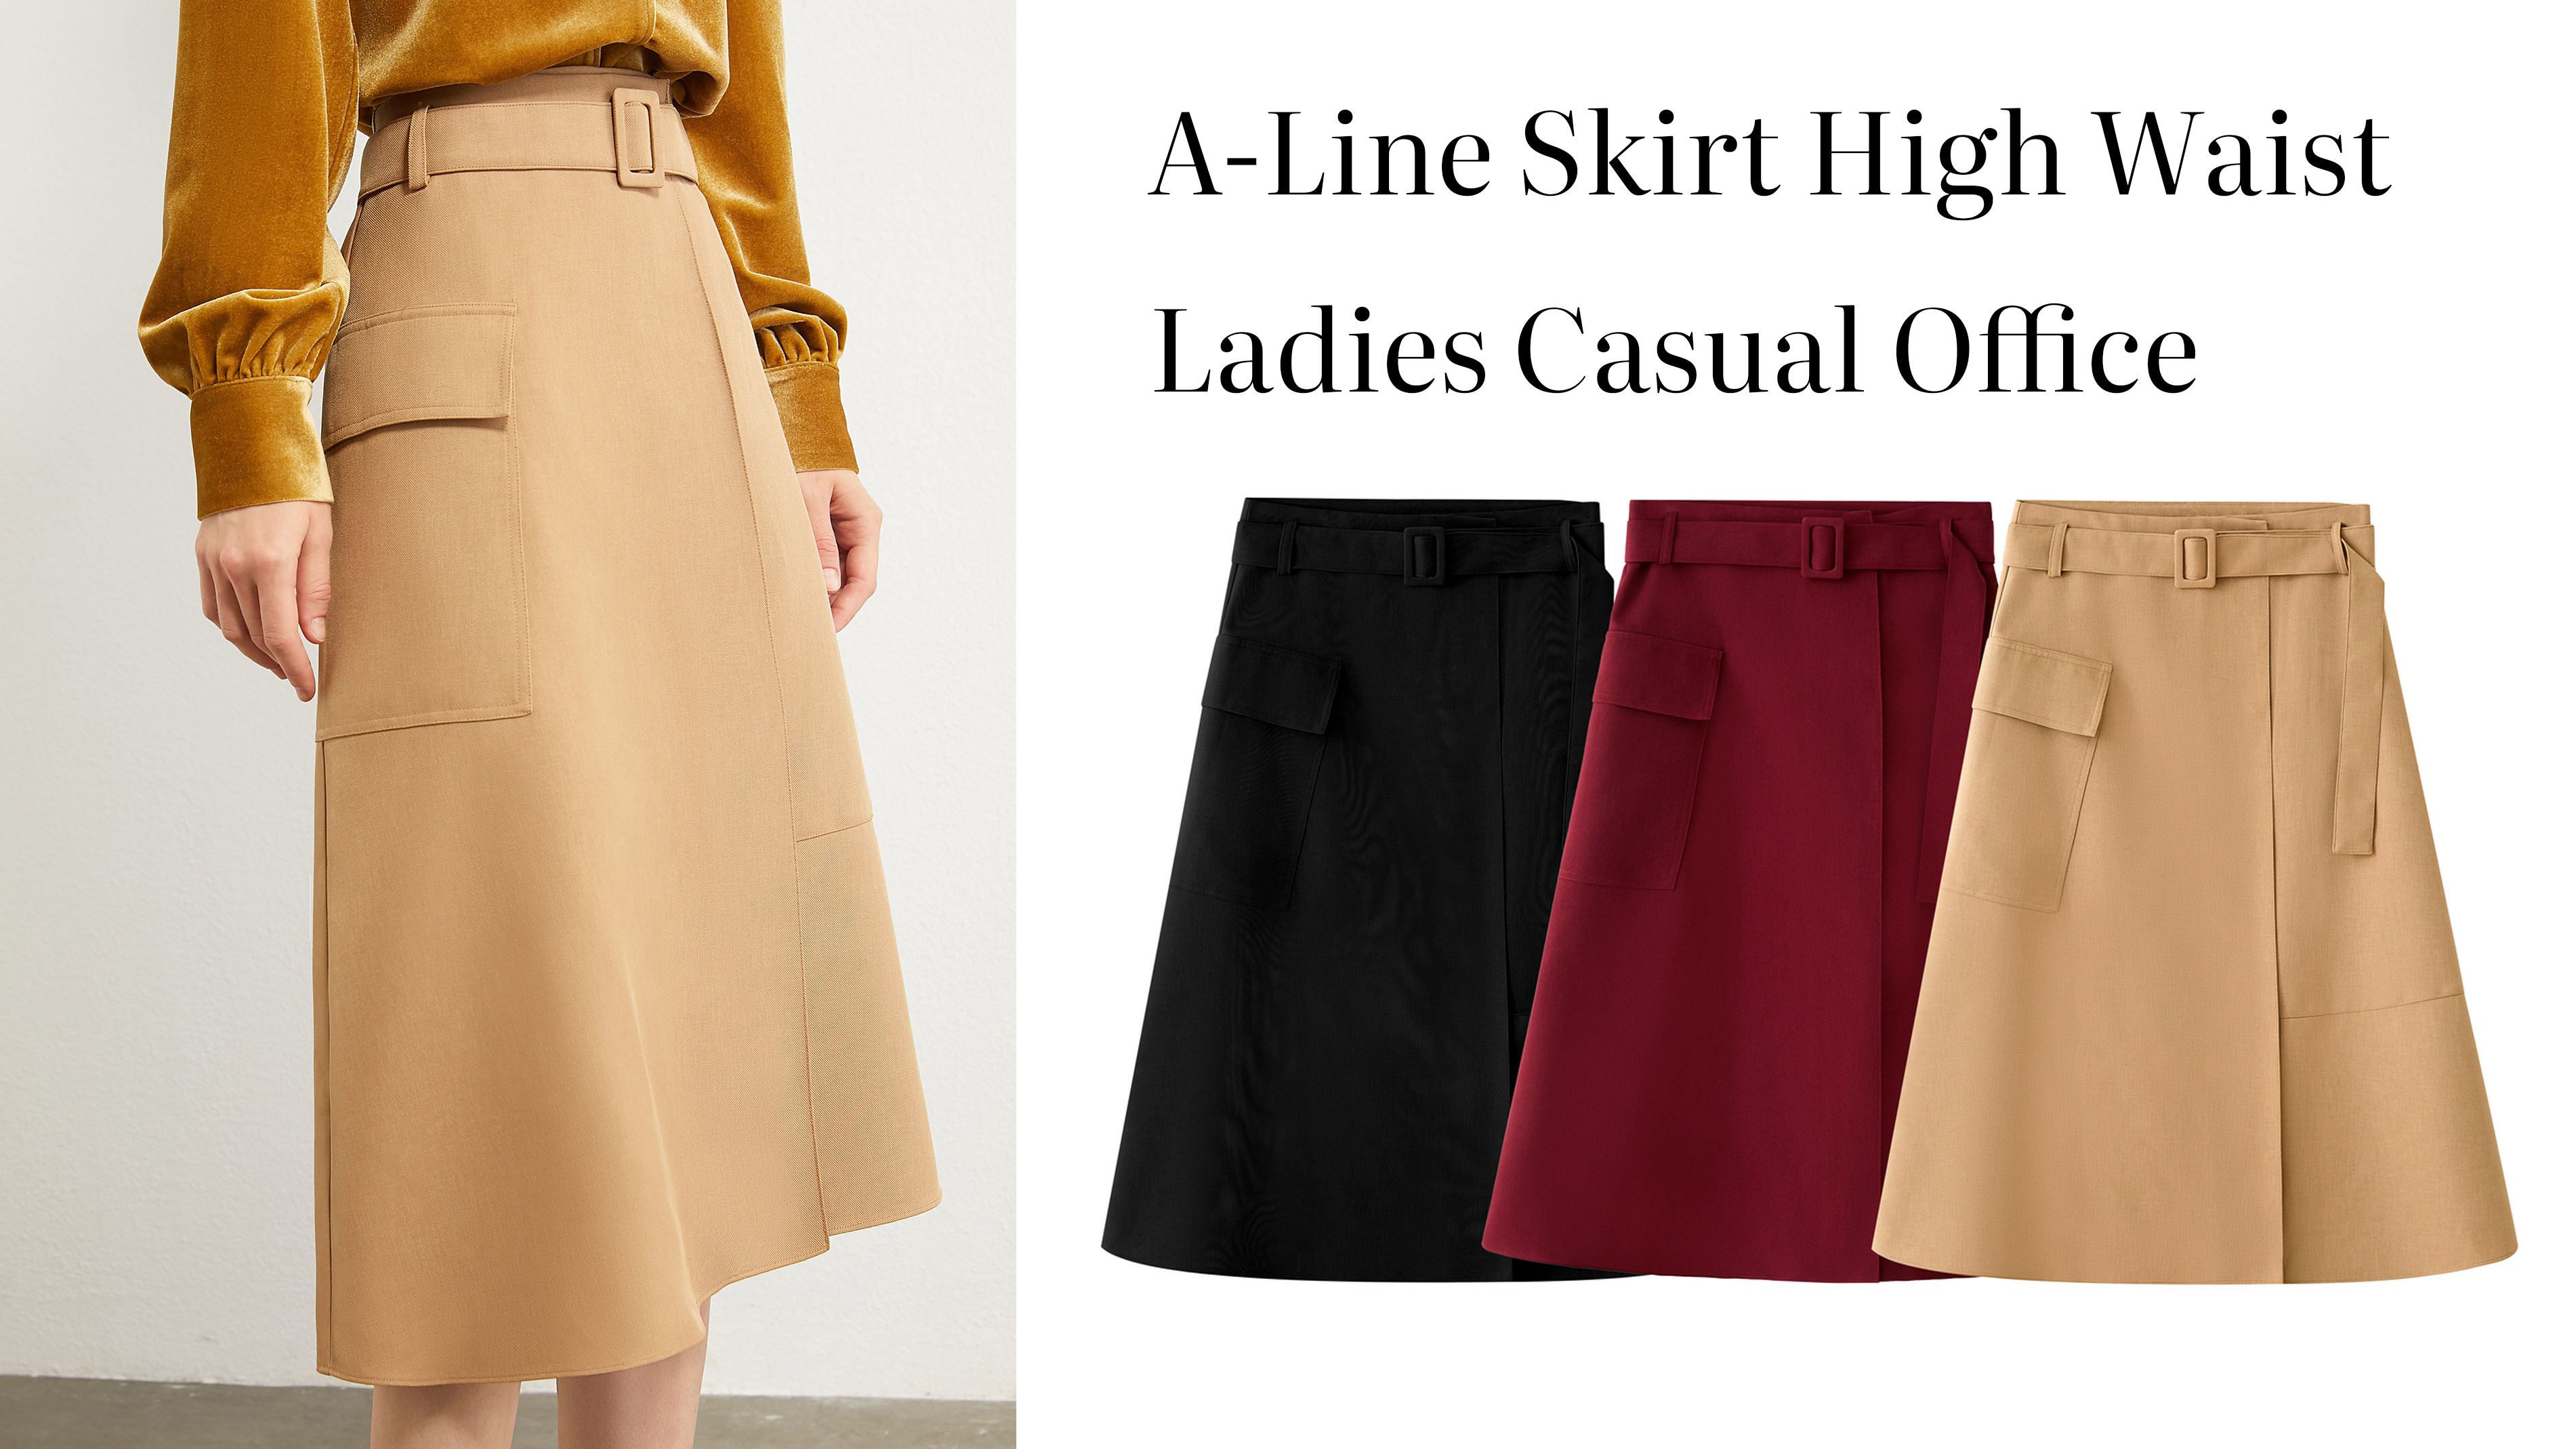 Quality A-Line Skirt High Waist Ladies Casual Office Manufacturer | Auschalink